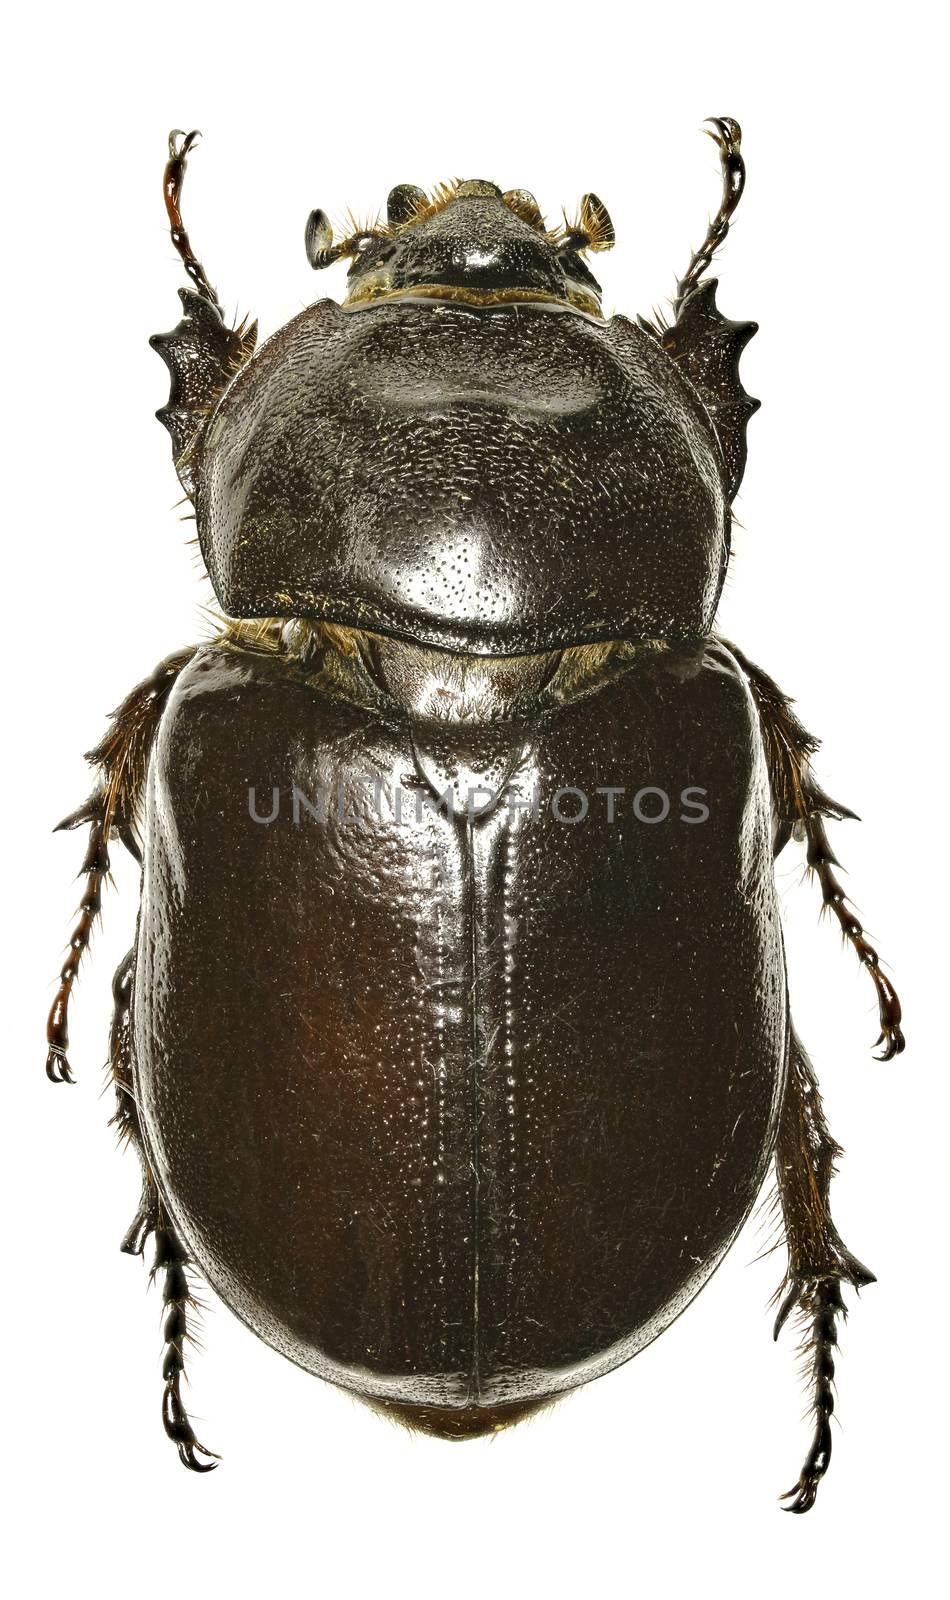 European rhinoceros beetle on white Background - Oryctes nasicornis  (Linnaeus, 1758)